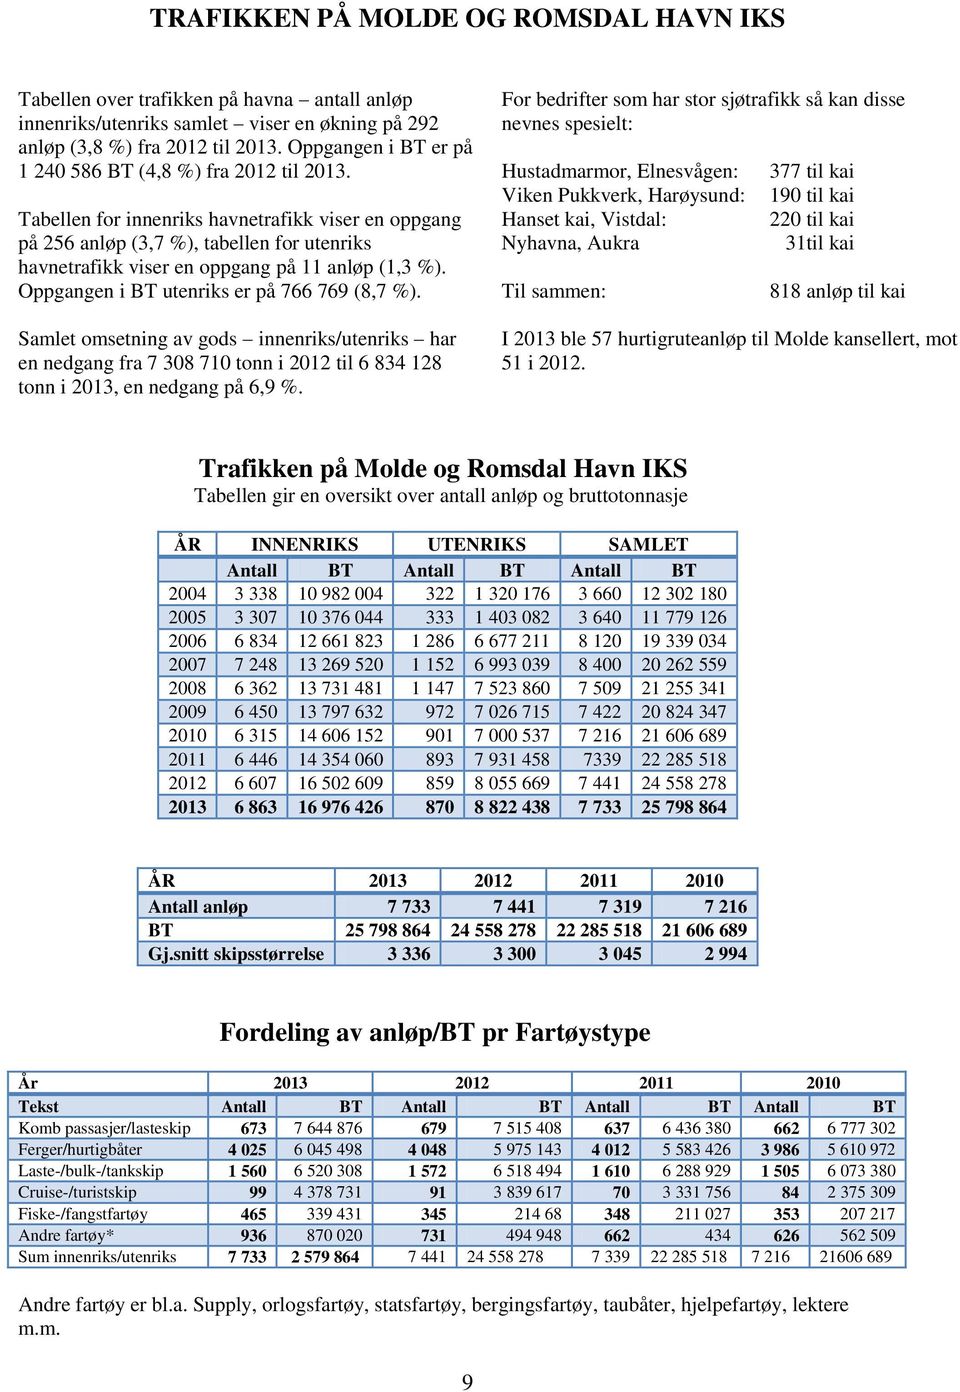 Tabellen for innenriks havnetrafikk viser en oppgang på 256 anløp (3,7 %), tabellen for utenriks havnetrafikk viser en oppgang på 11 anløp (1,3 %). Oppgangen i BT utenriks er på 766 769 (8,7 %).